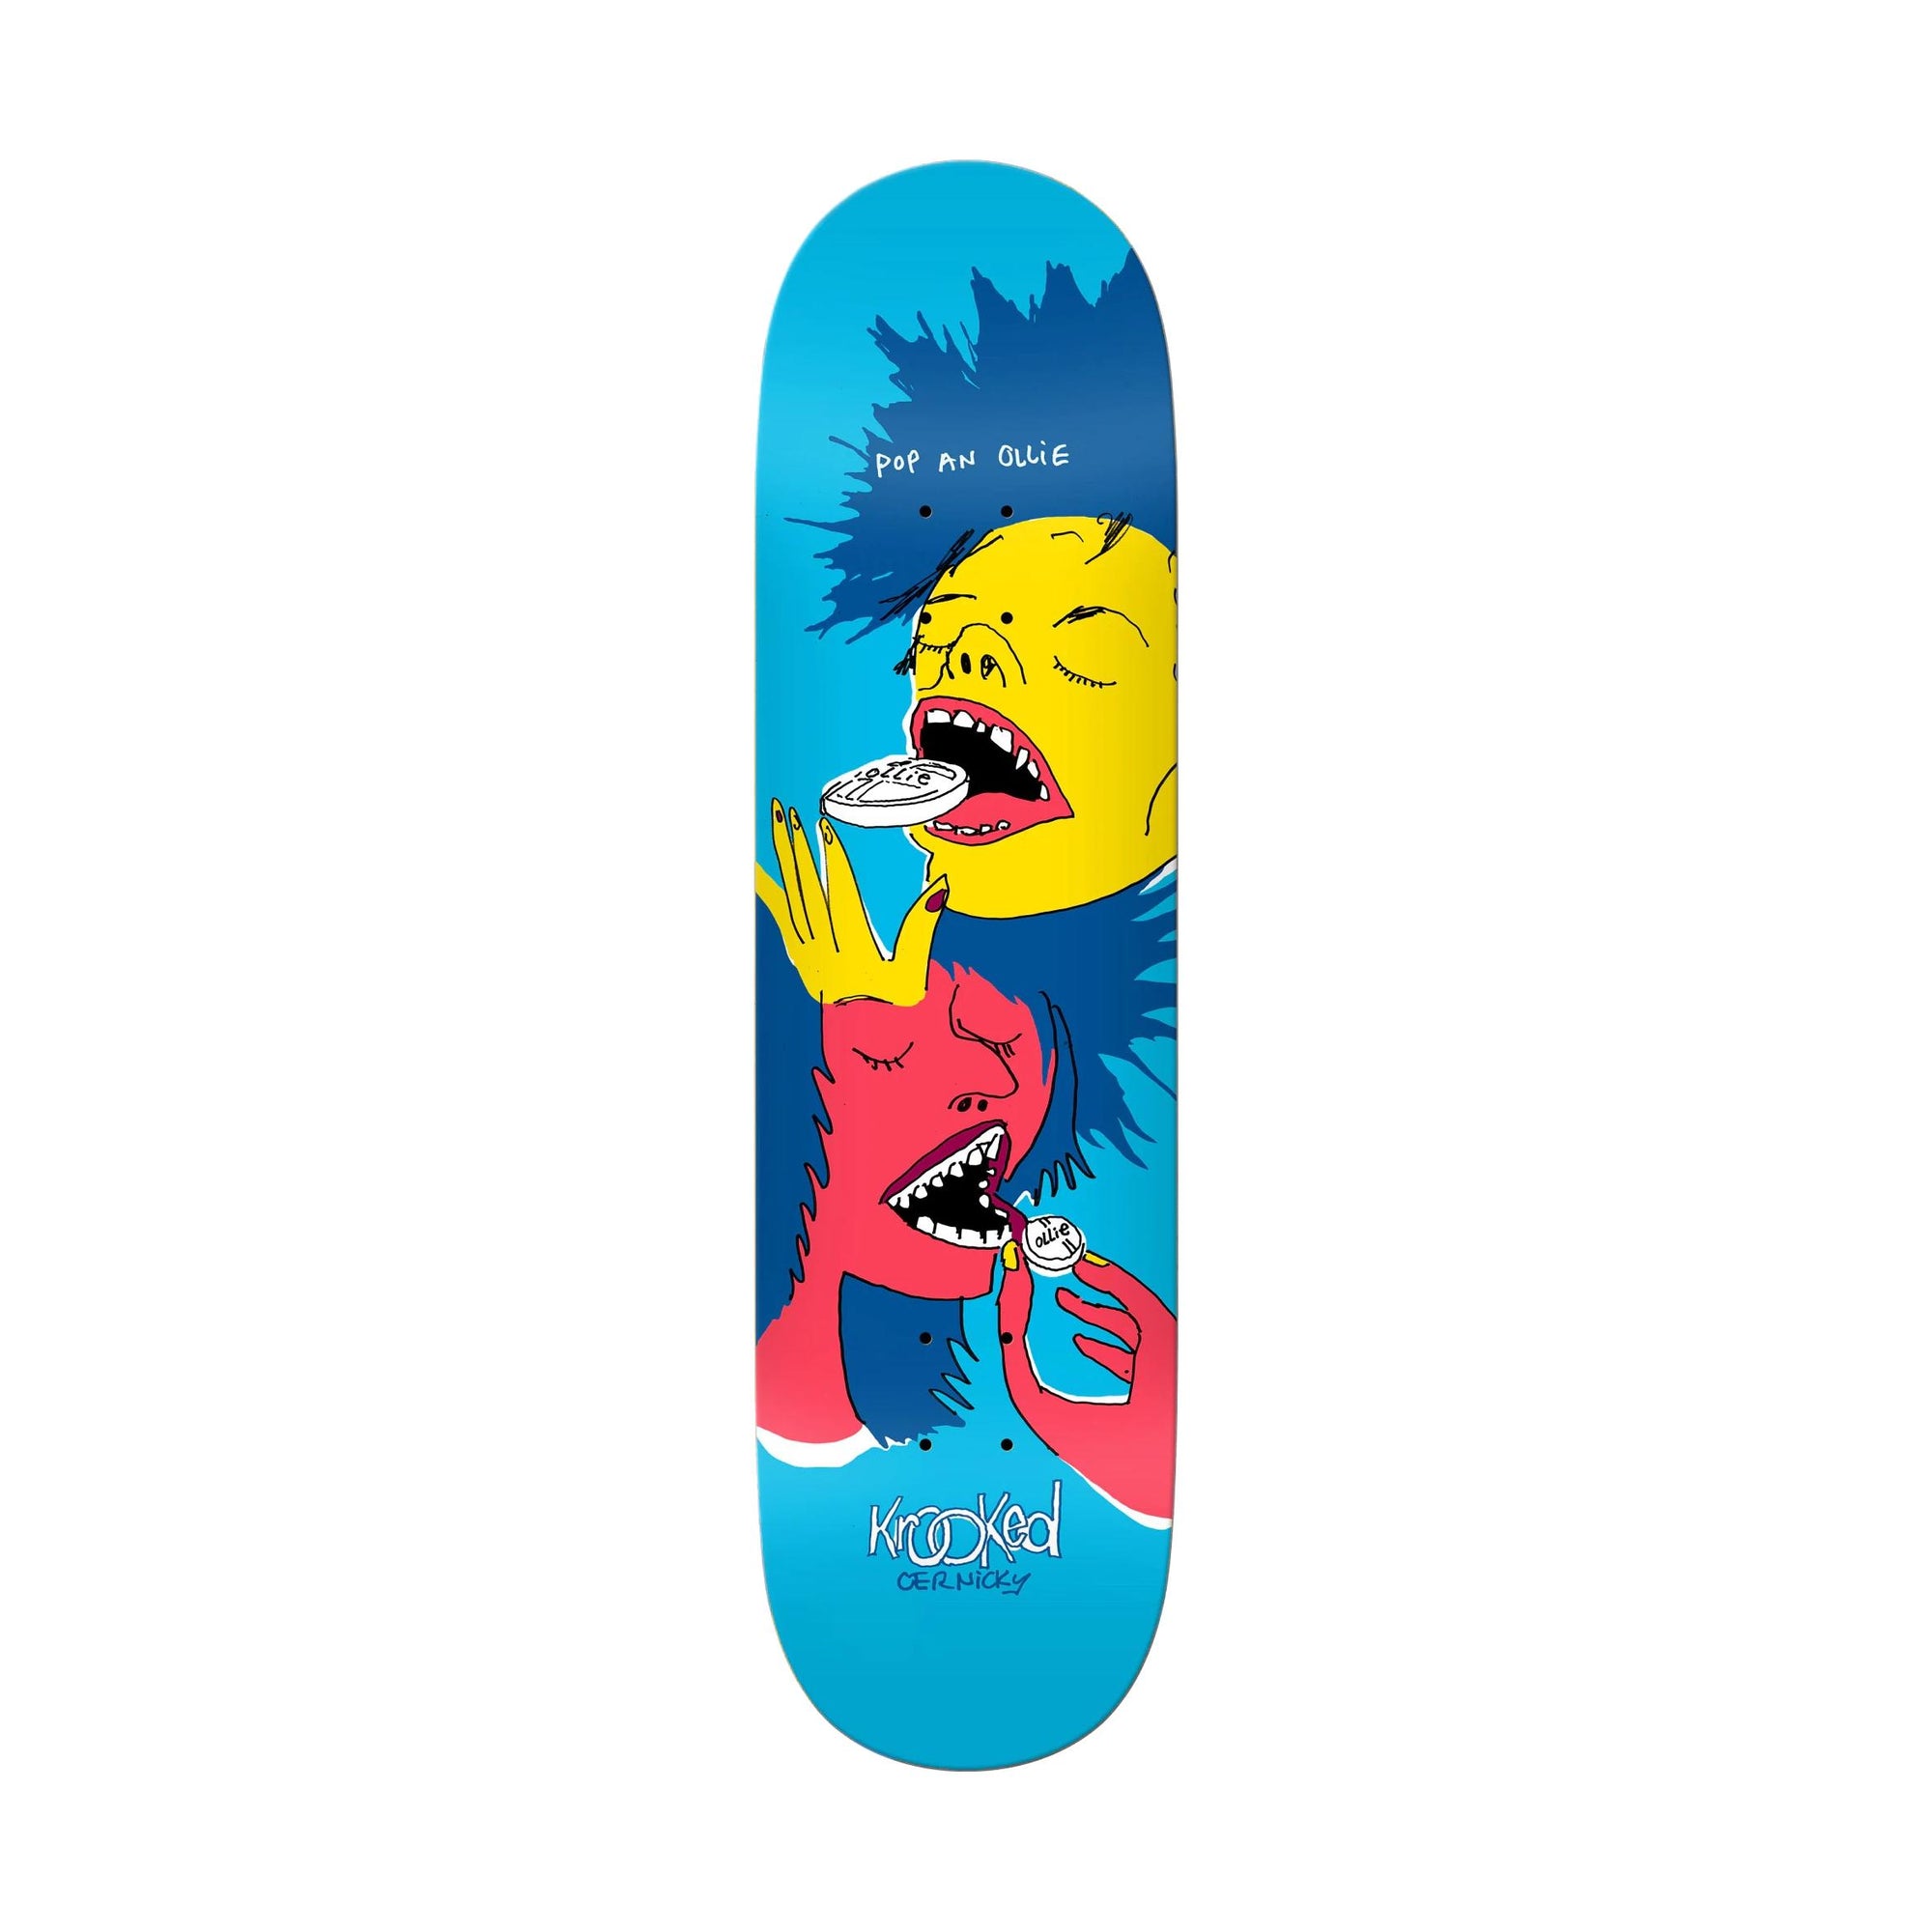 Krooked Cernicky Popped 8.38" Deck - Venue Skateboards